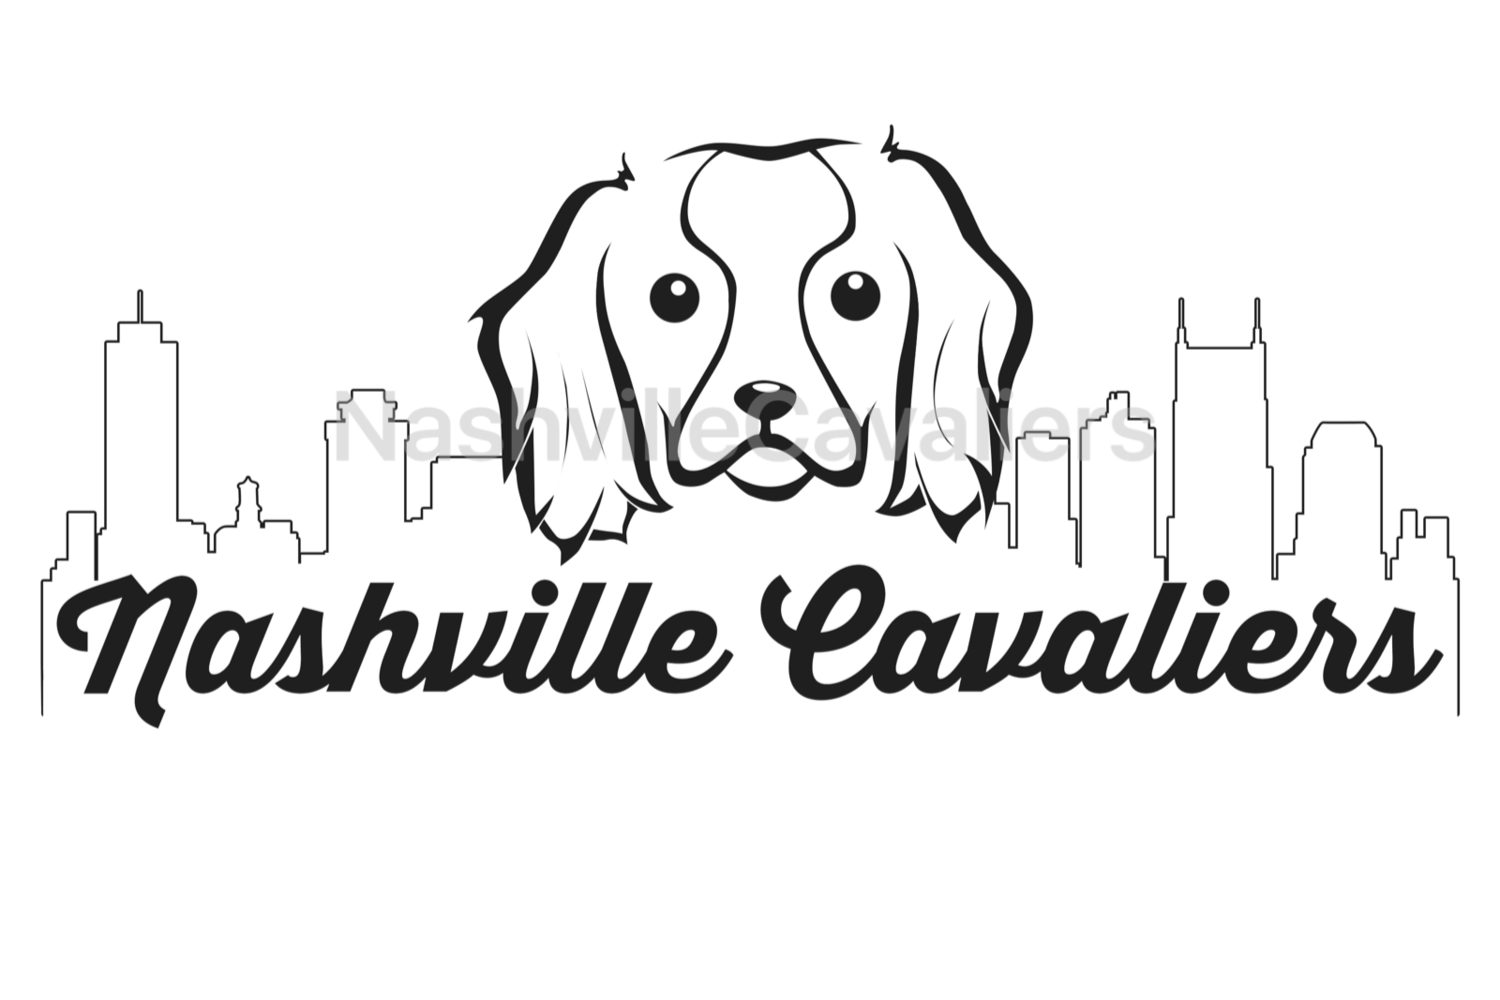 Nashville Cavaliers